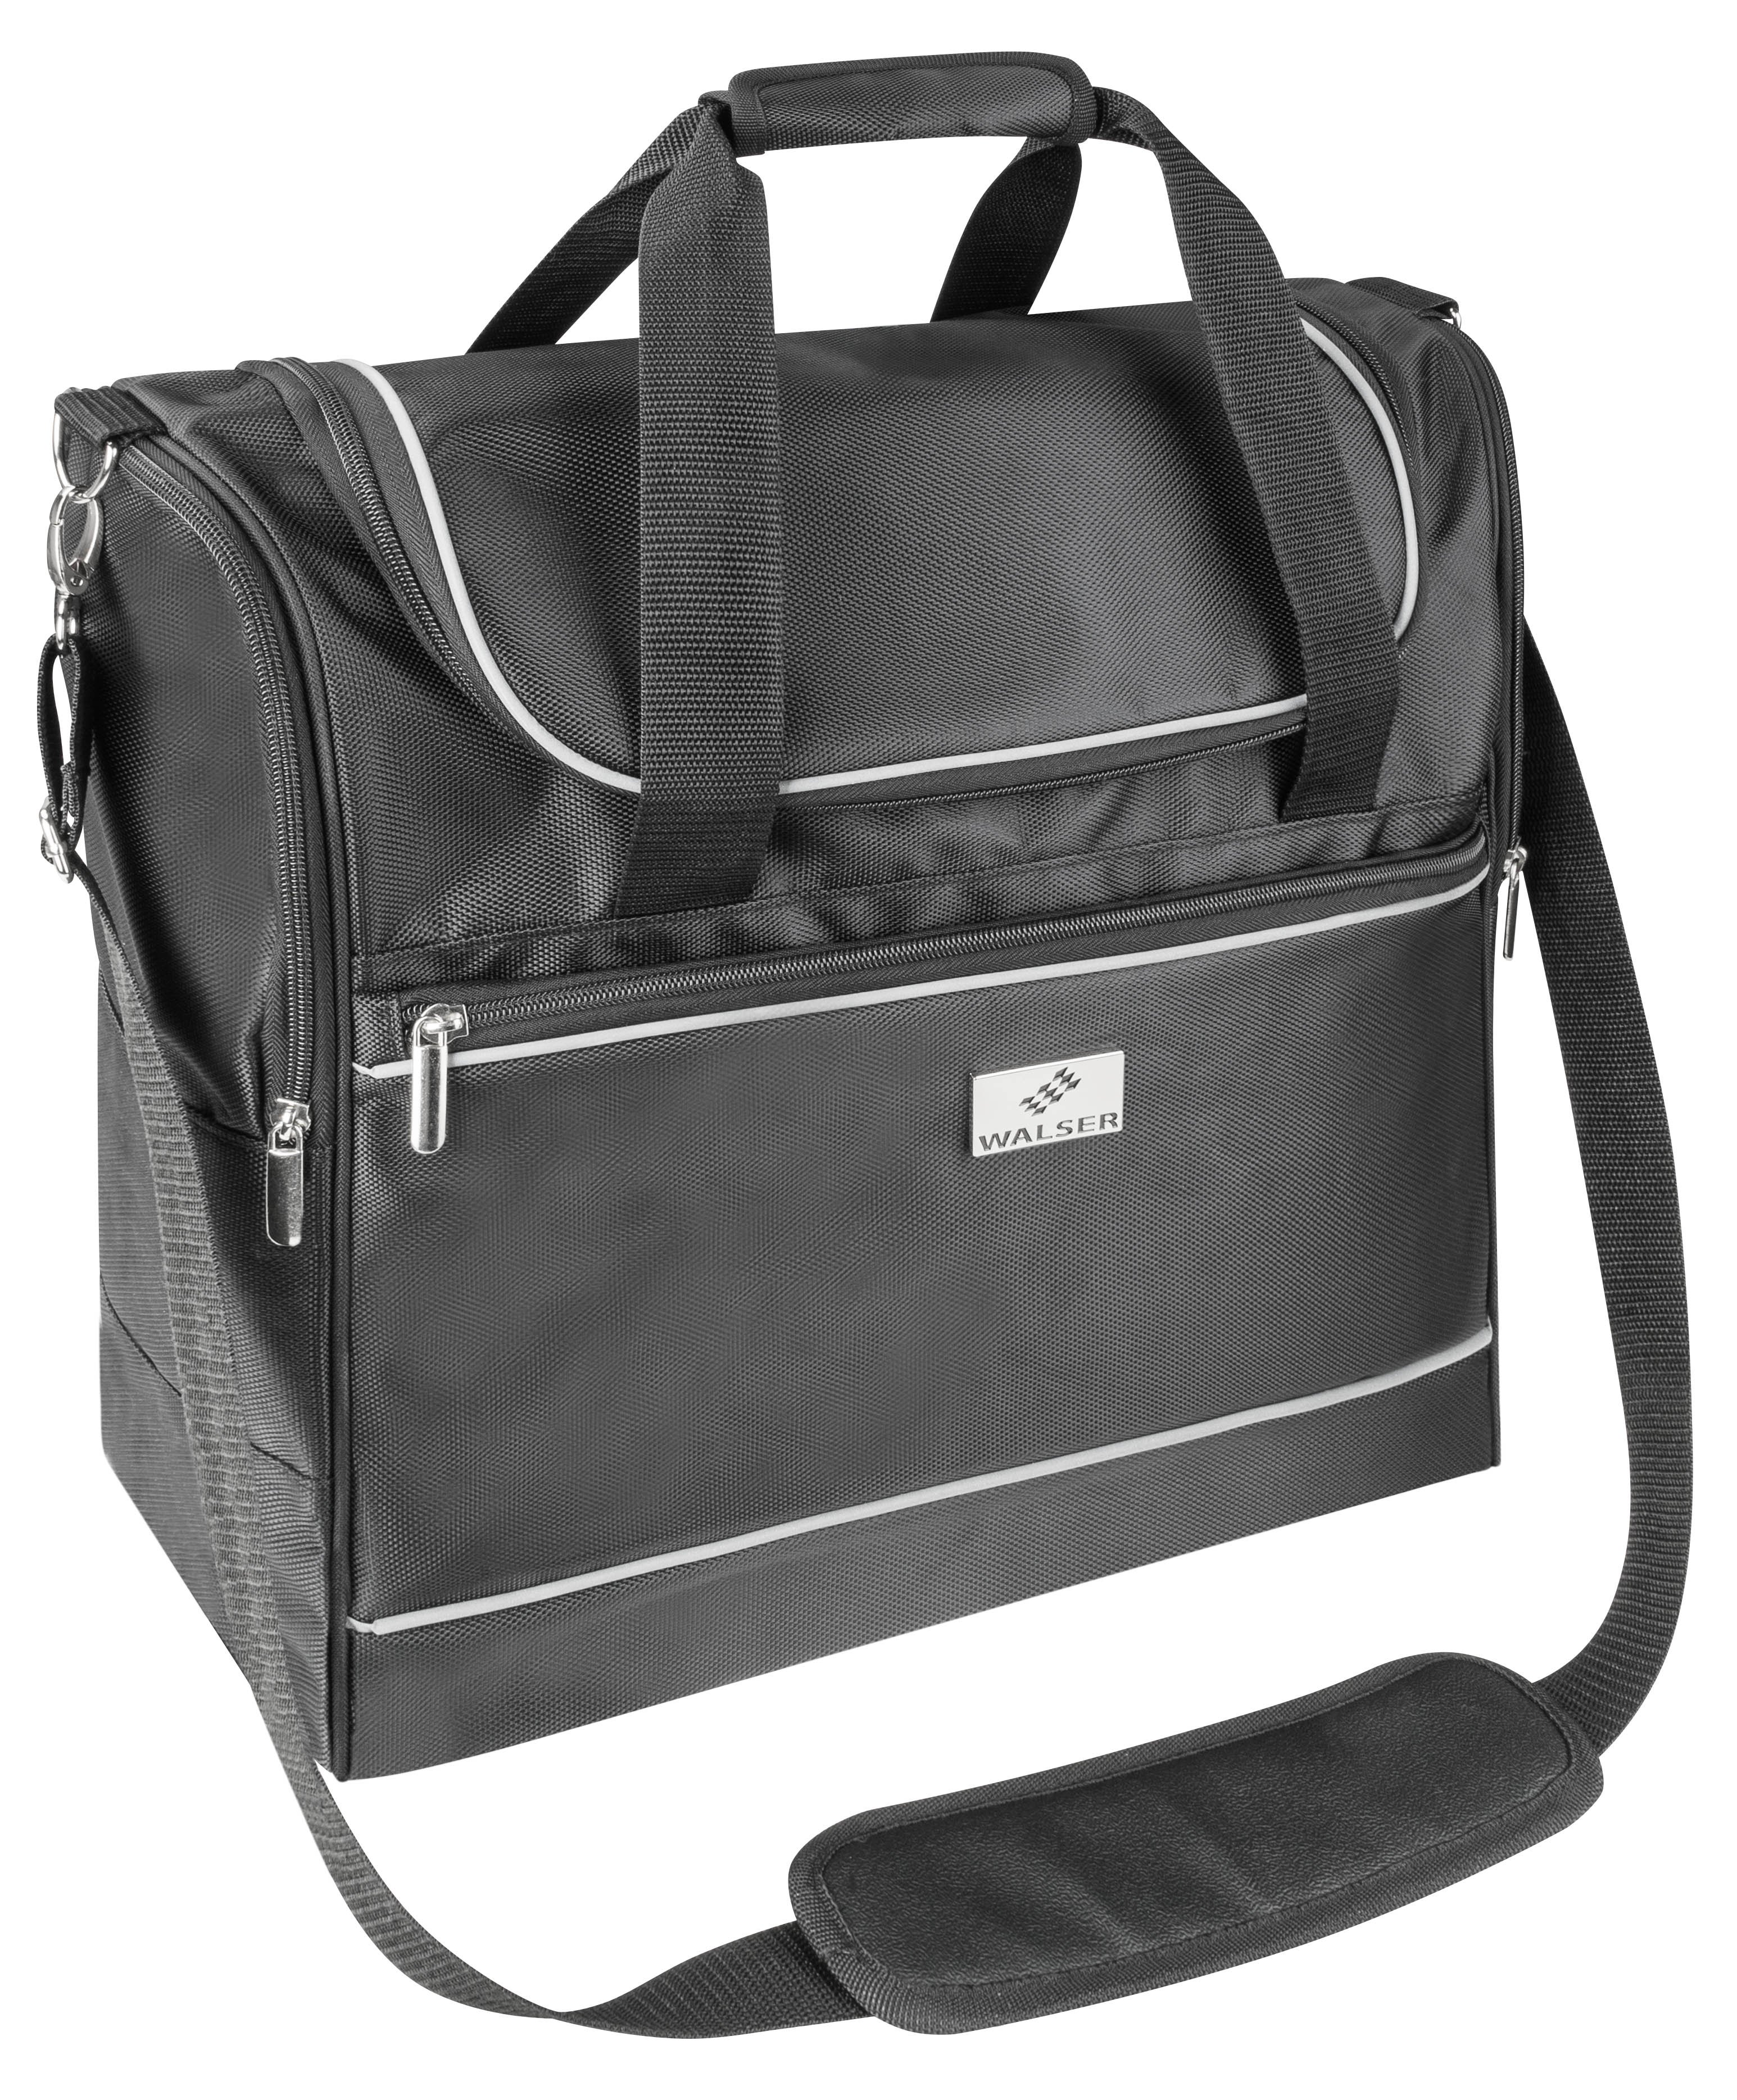 Carbags travel bag 40x20x40cm black